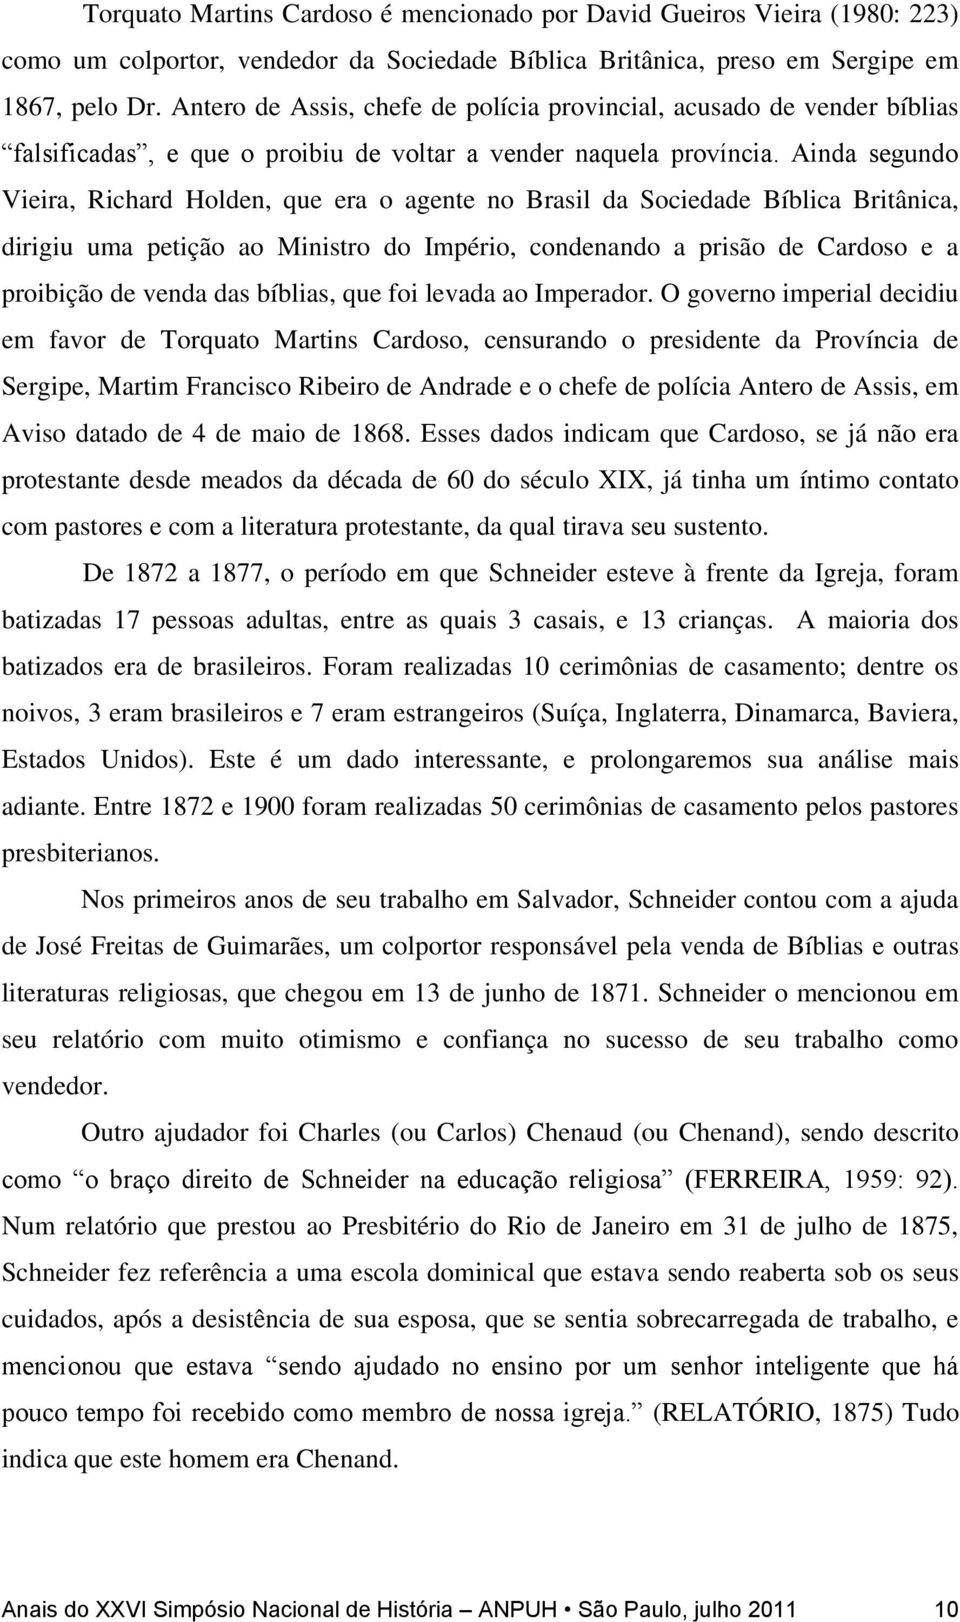 Ainda segundo Vieira, Richard Holden, que era o agente no Brasil da Sociedade Bíblica Britânica, dirigiu uma petição ao Ministro do Império, condenando a prisão de Cardoso e a proibição de venda das